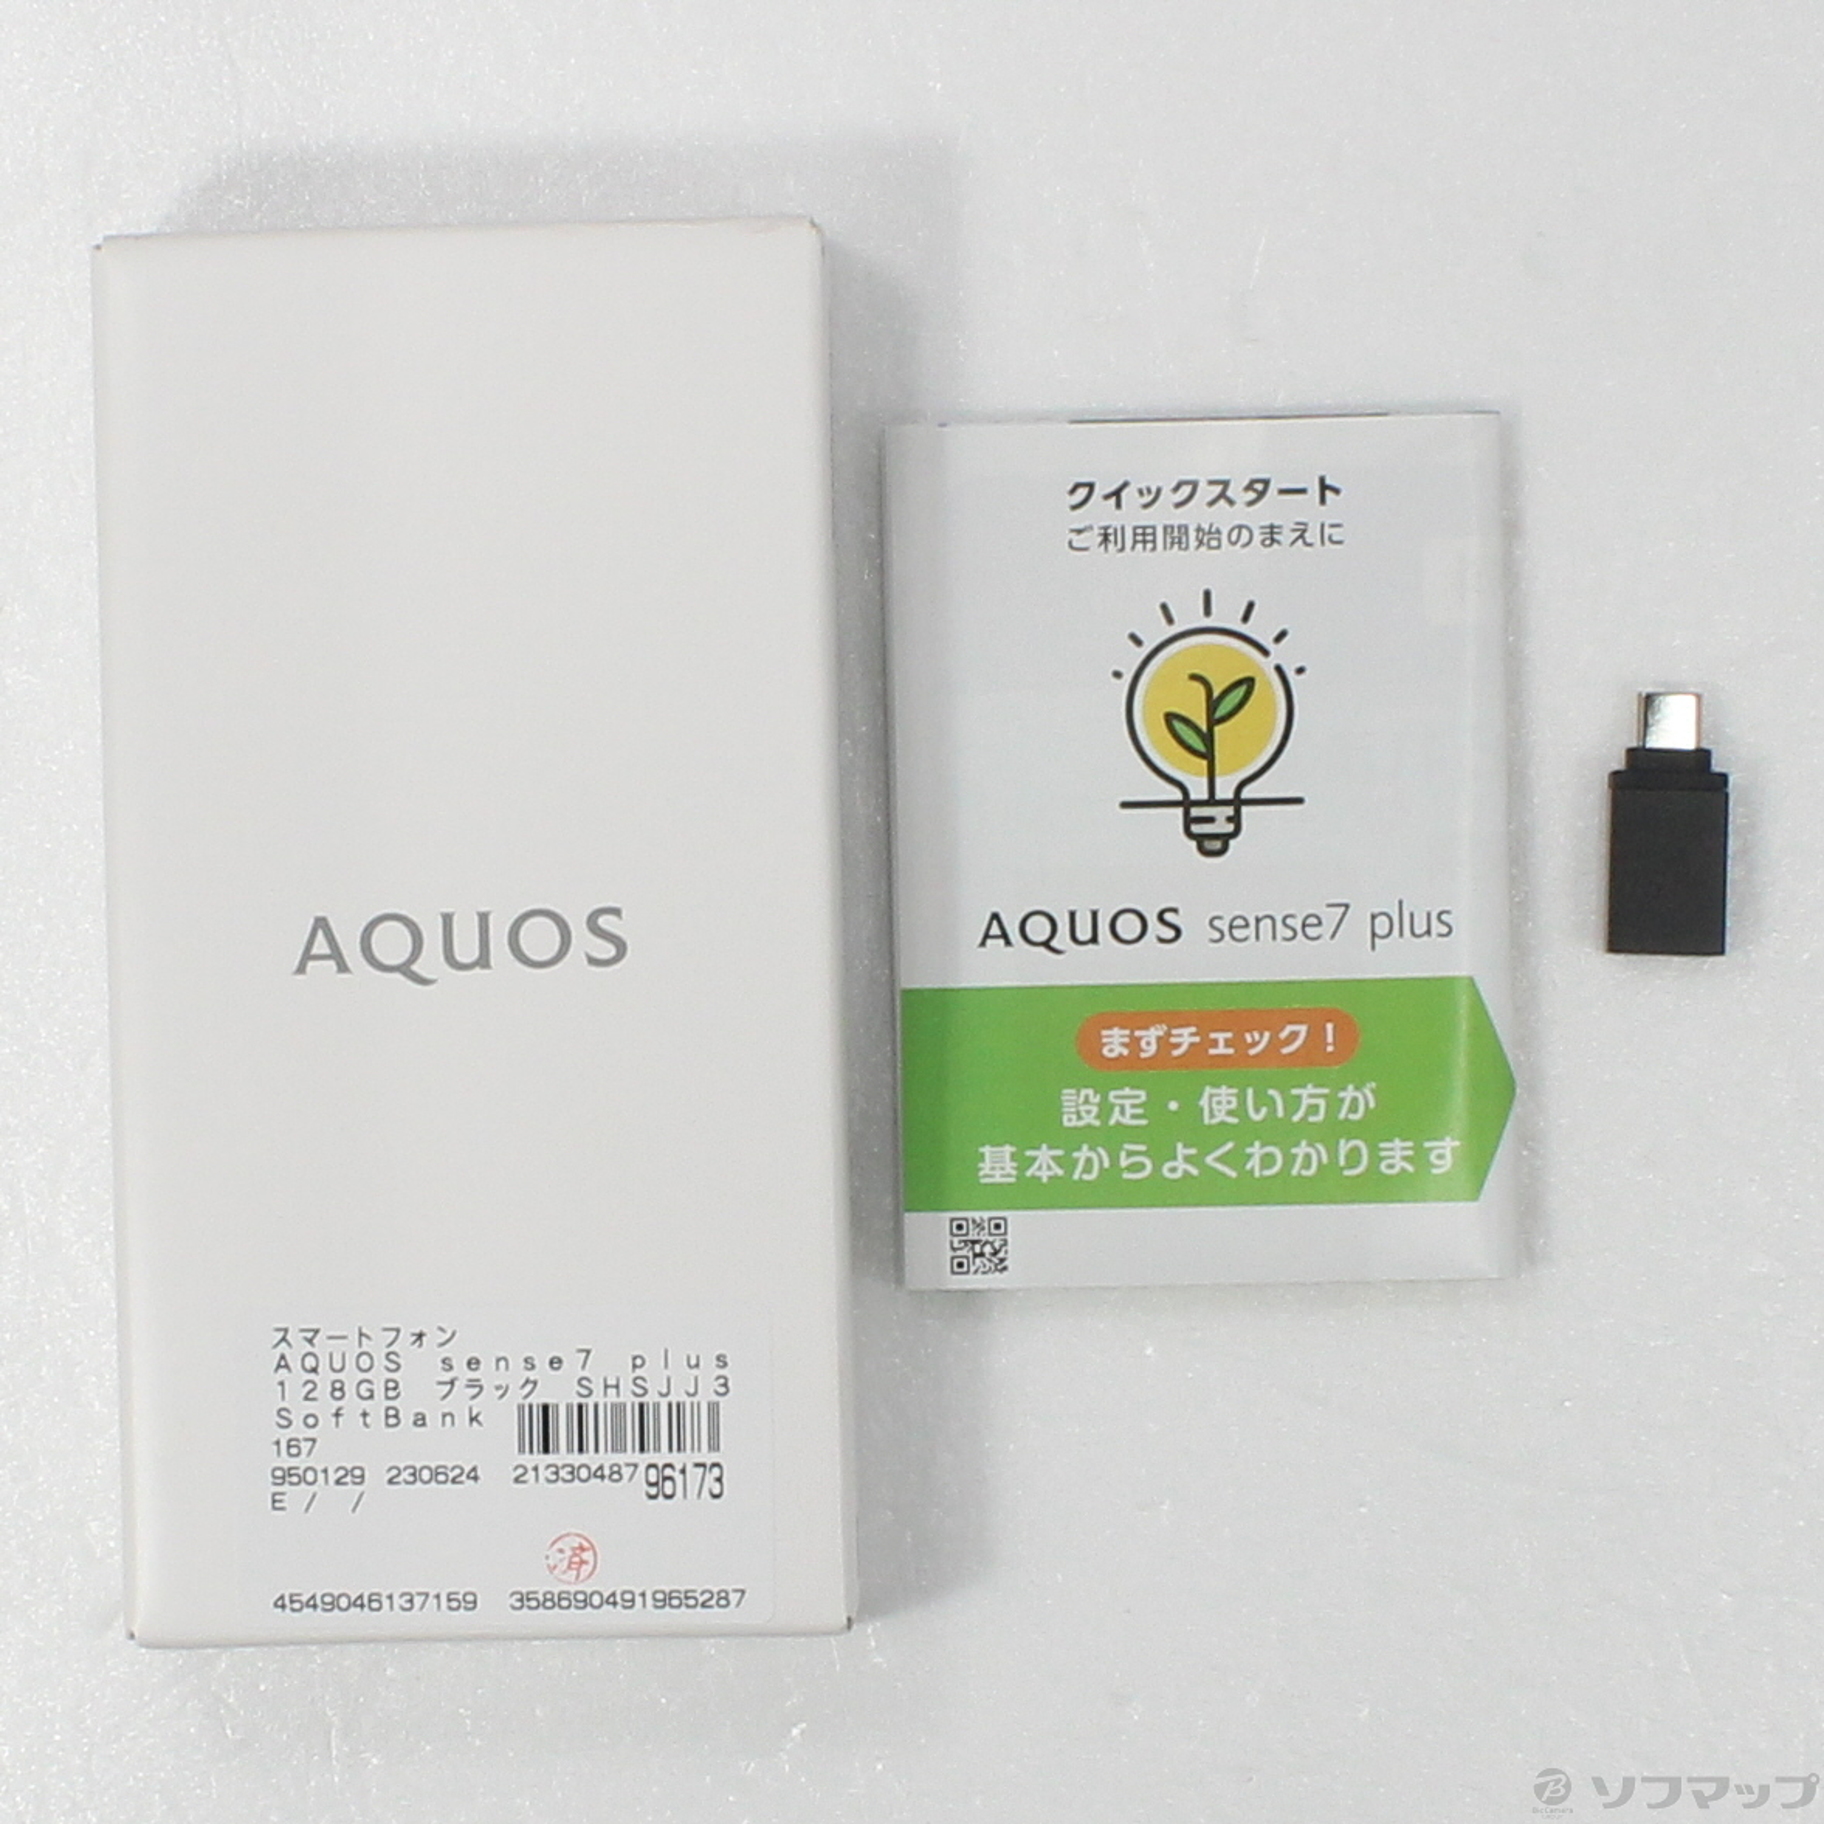 中古】AQUOS sense7 plus 128GB ブラック SHSJJ3 SoftBank